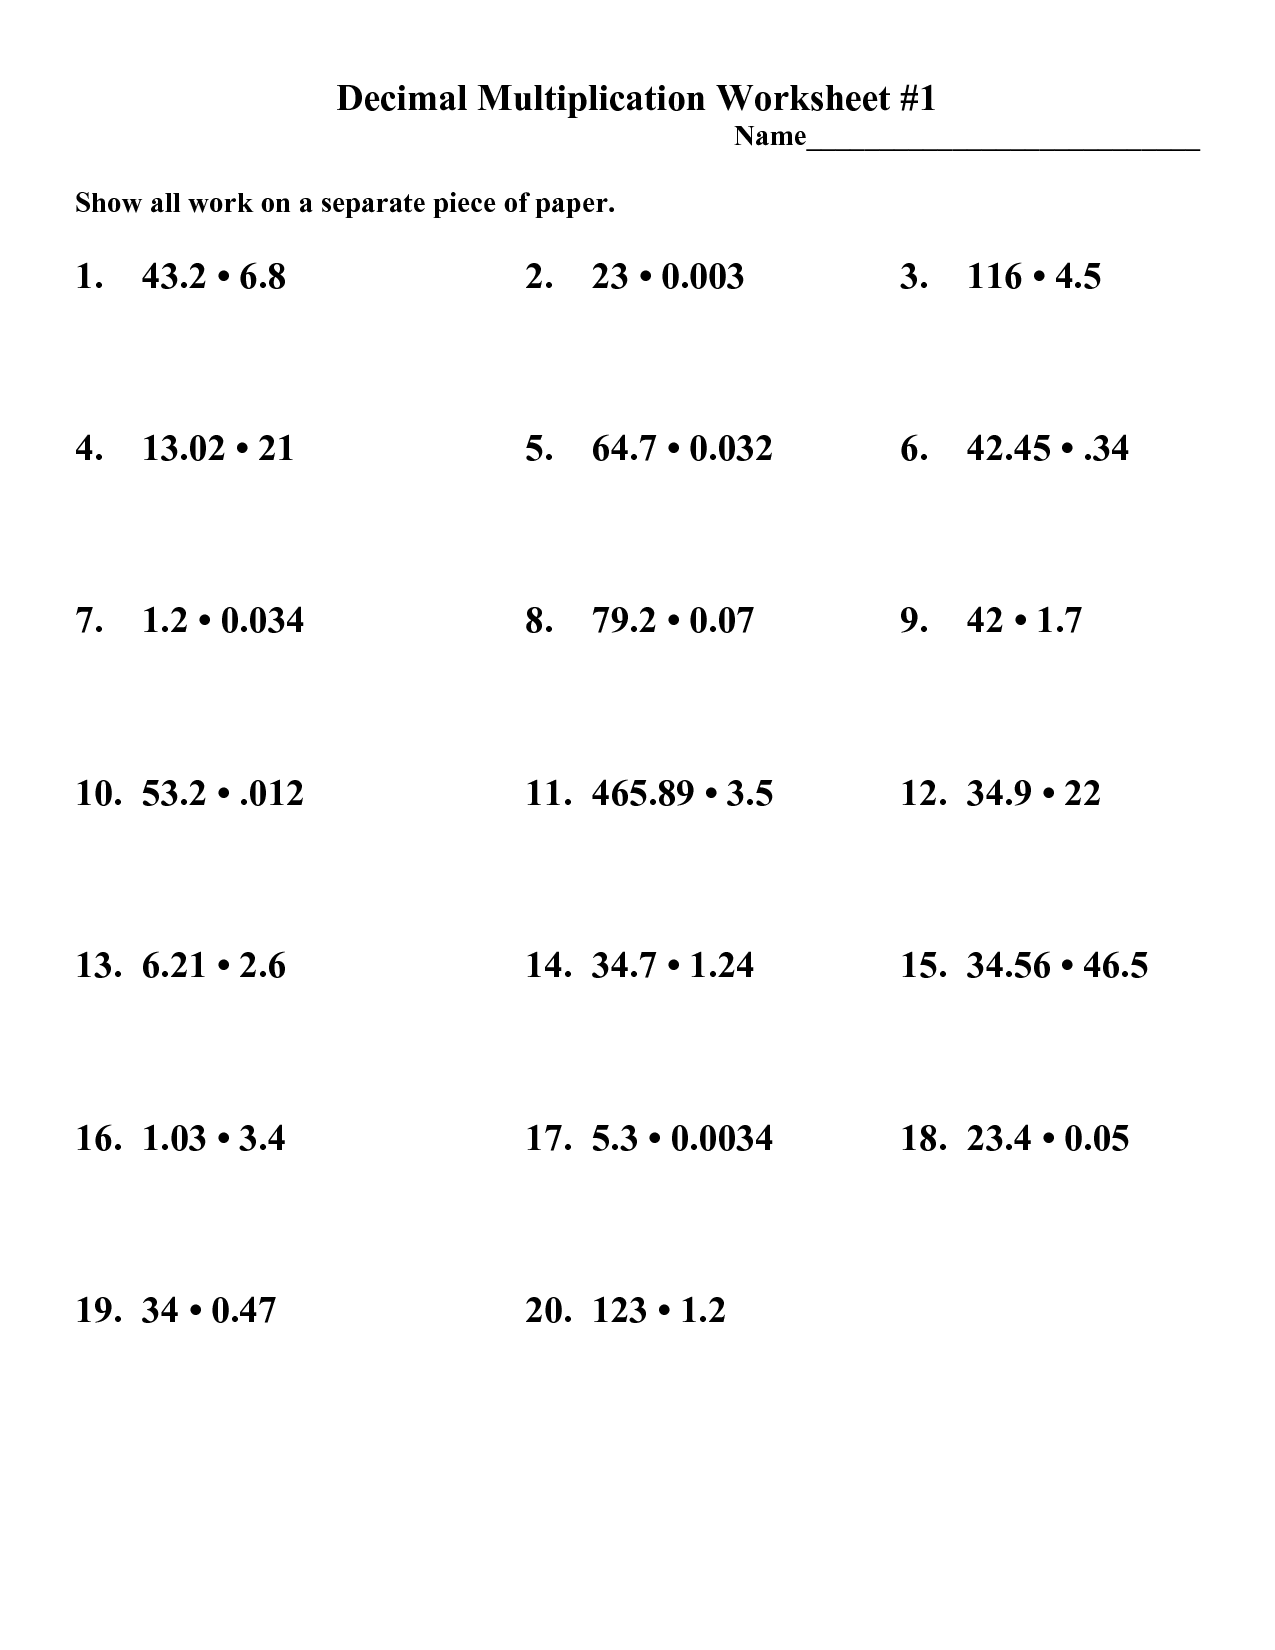 8-best-images-of-dividing-decimals-worksheet-free-printable-decimal-division-worksheets